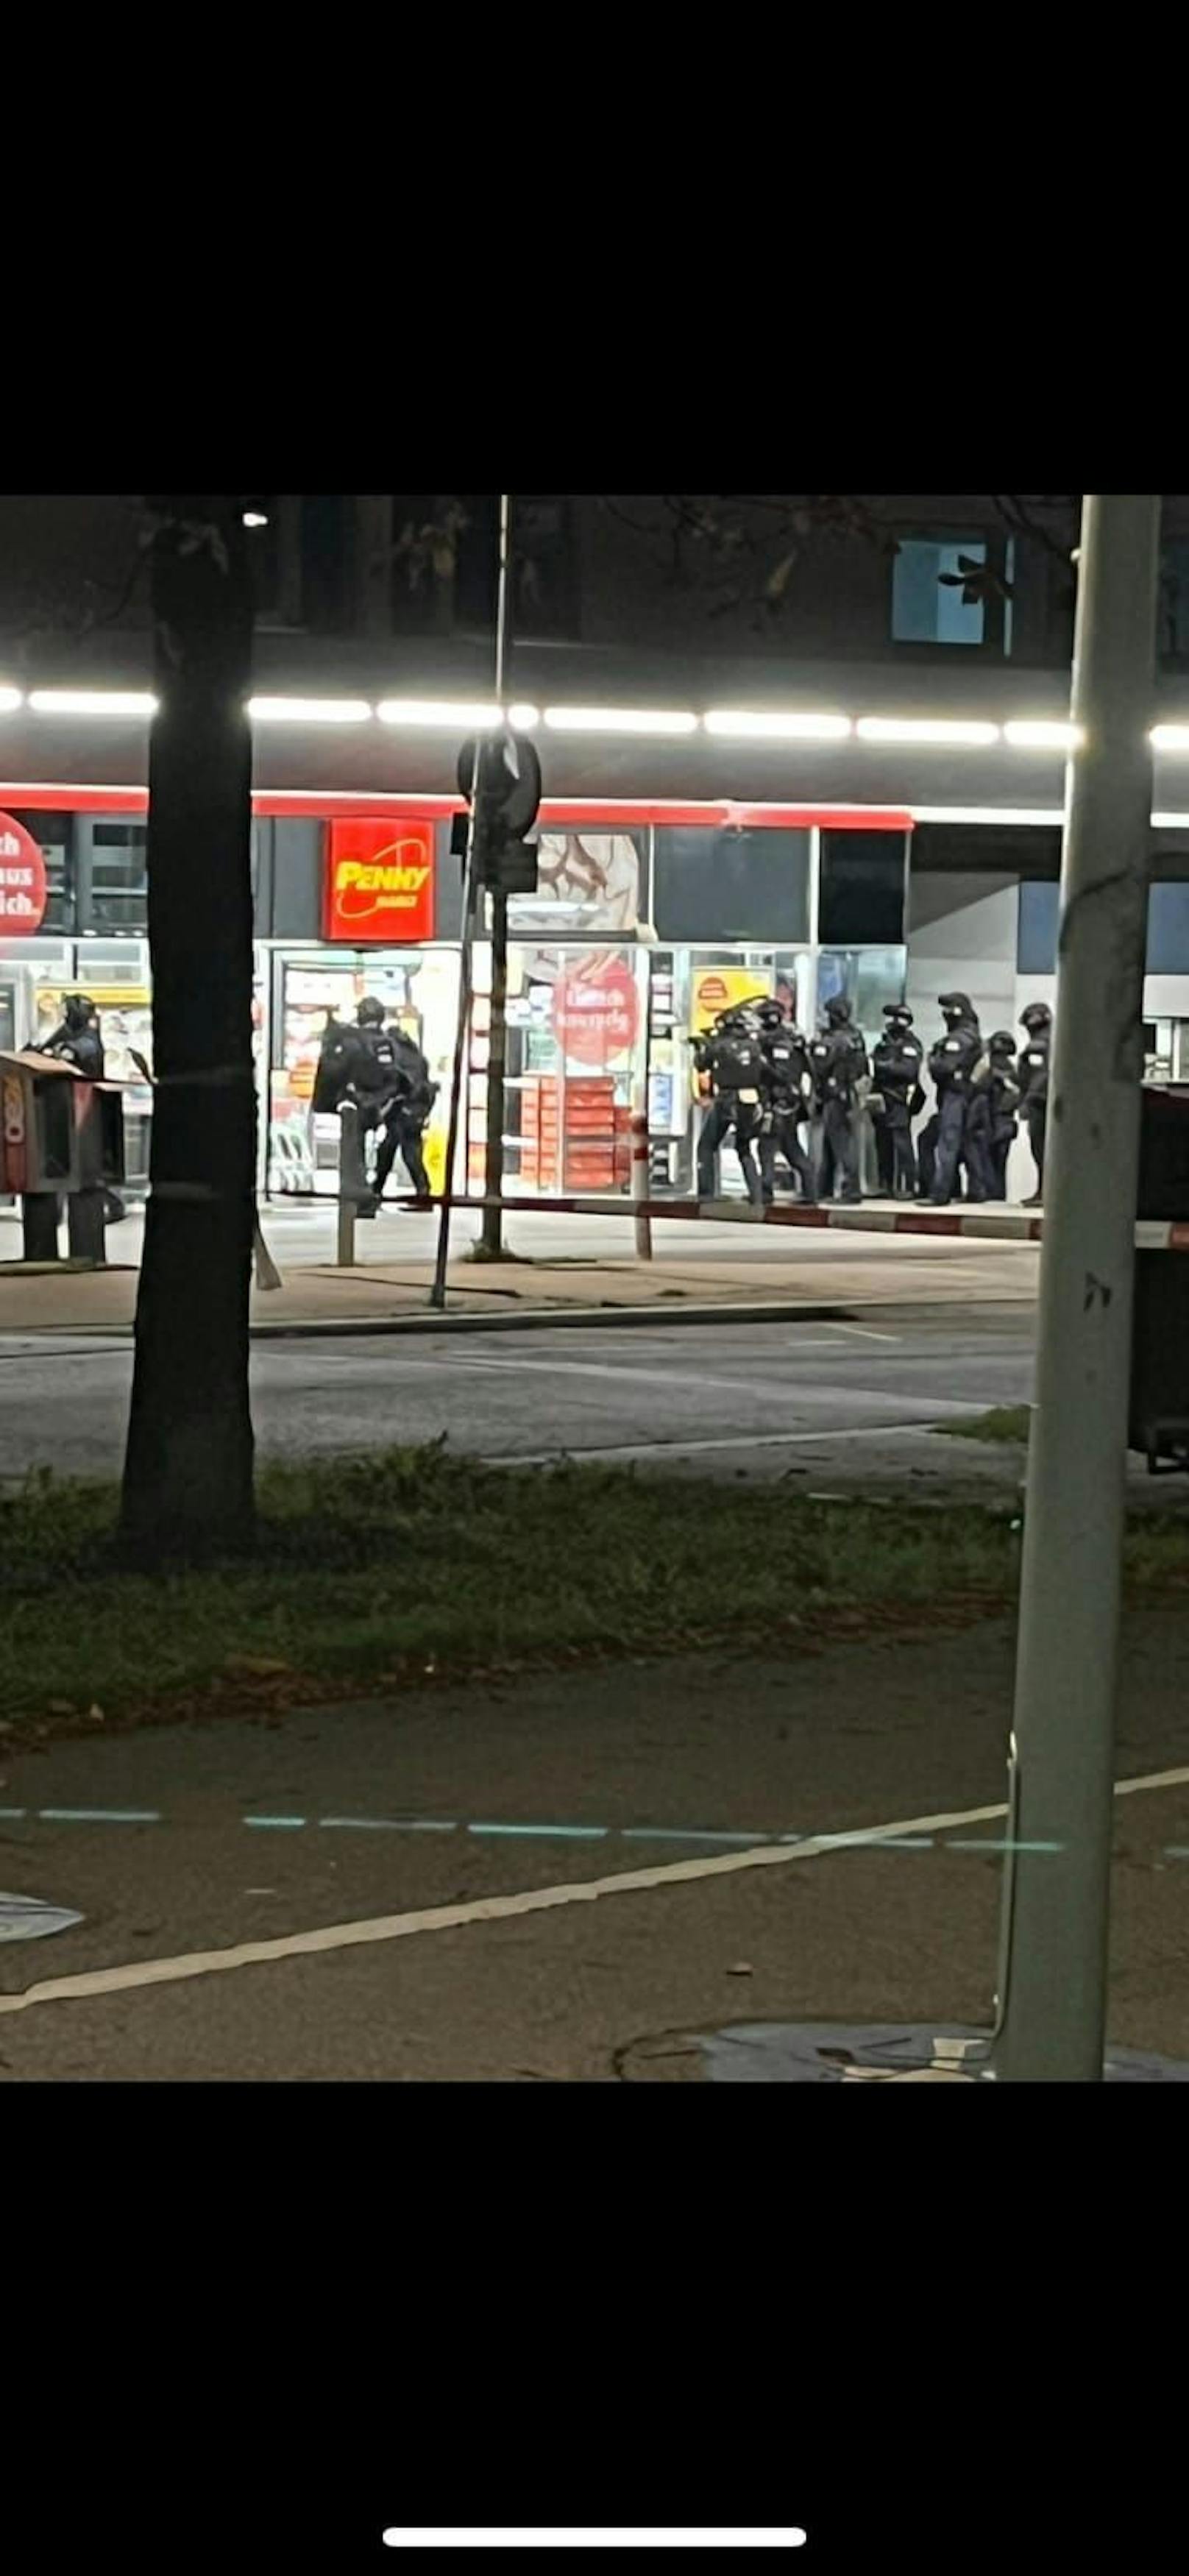 Raub in Wien! Schwer bewaffnete Polizisten im Einsatz